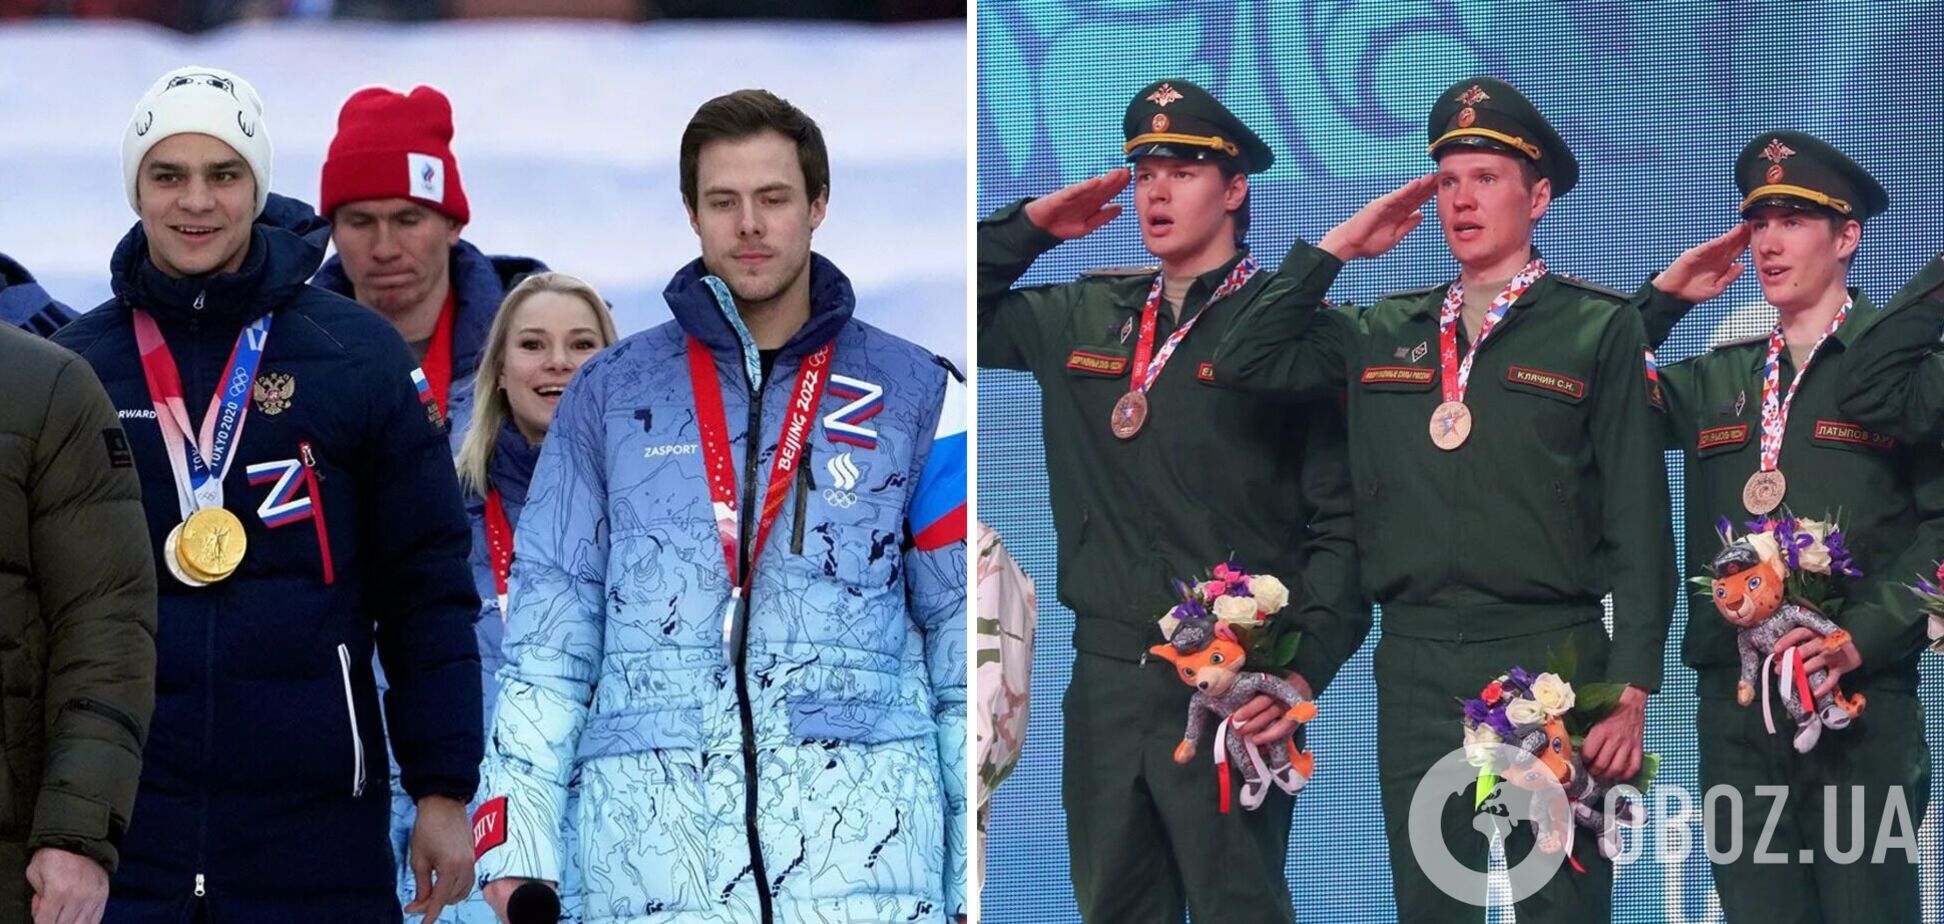 'Як у Лужниках zігувати, так перші': у Росії вирішили 'відмазати' спортсменів від мобілізації, викликавши гнів вболівальників